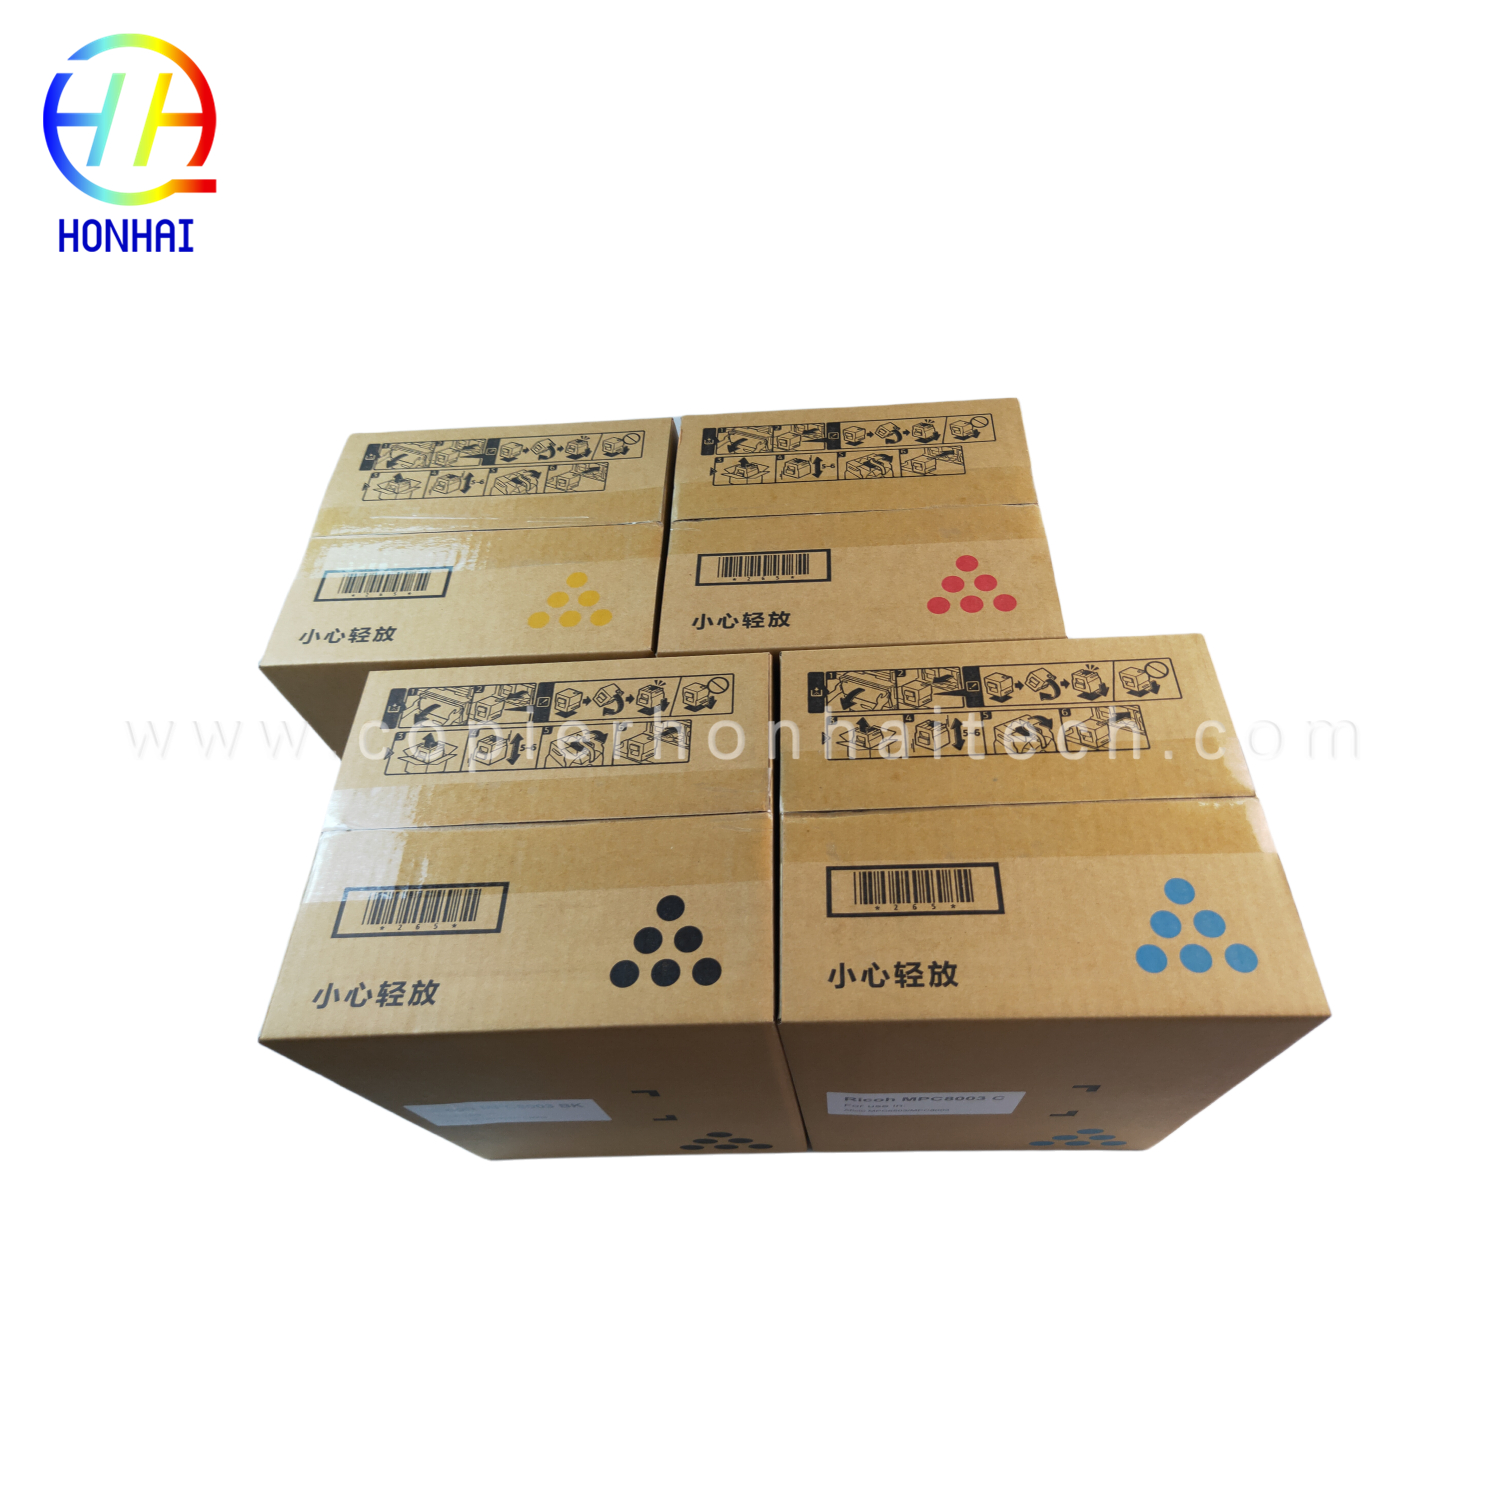 https://www.copierhonhaitech.com/toner-cartridge-japan-powder-for-ricoh-ref-842346-mp9002-mp6002-mp6002sp-mp6503-mp7502-mp7502sp-mp7503-mp9002sp-mp-9003-product